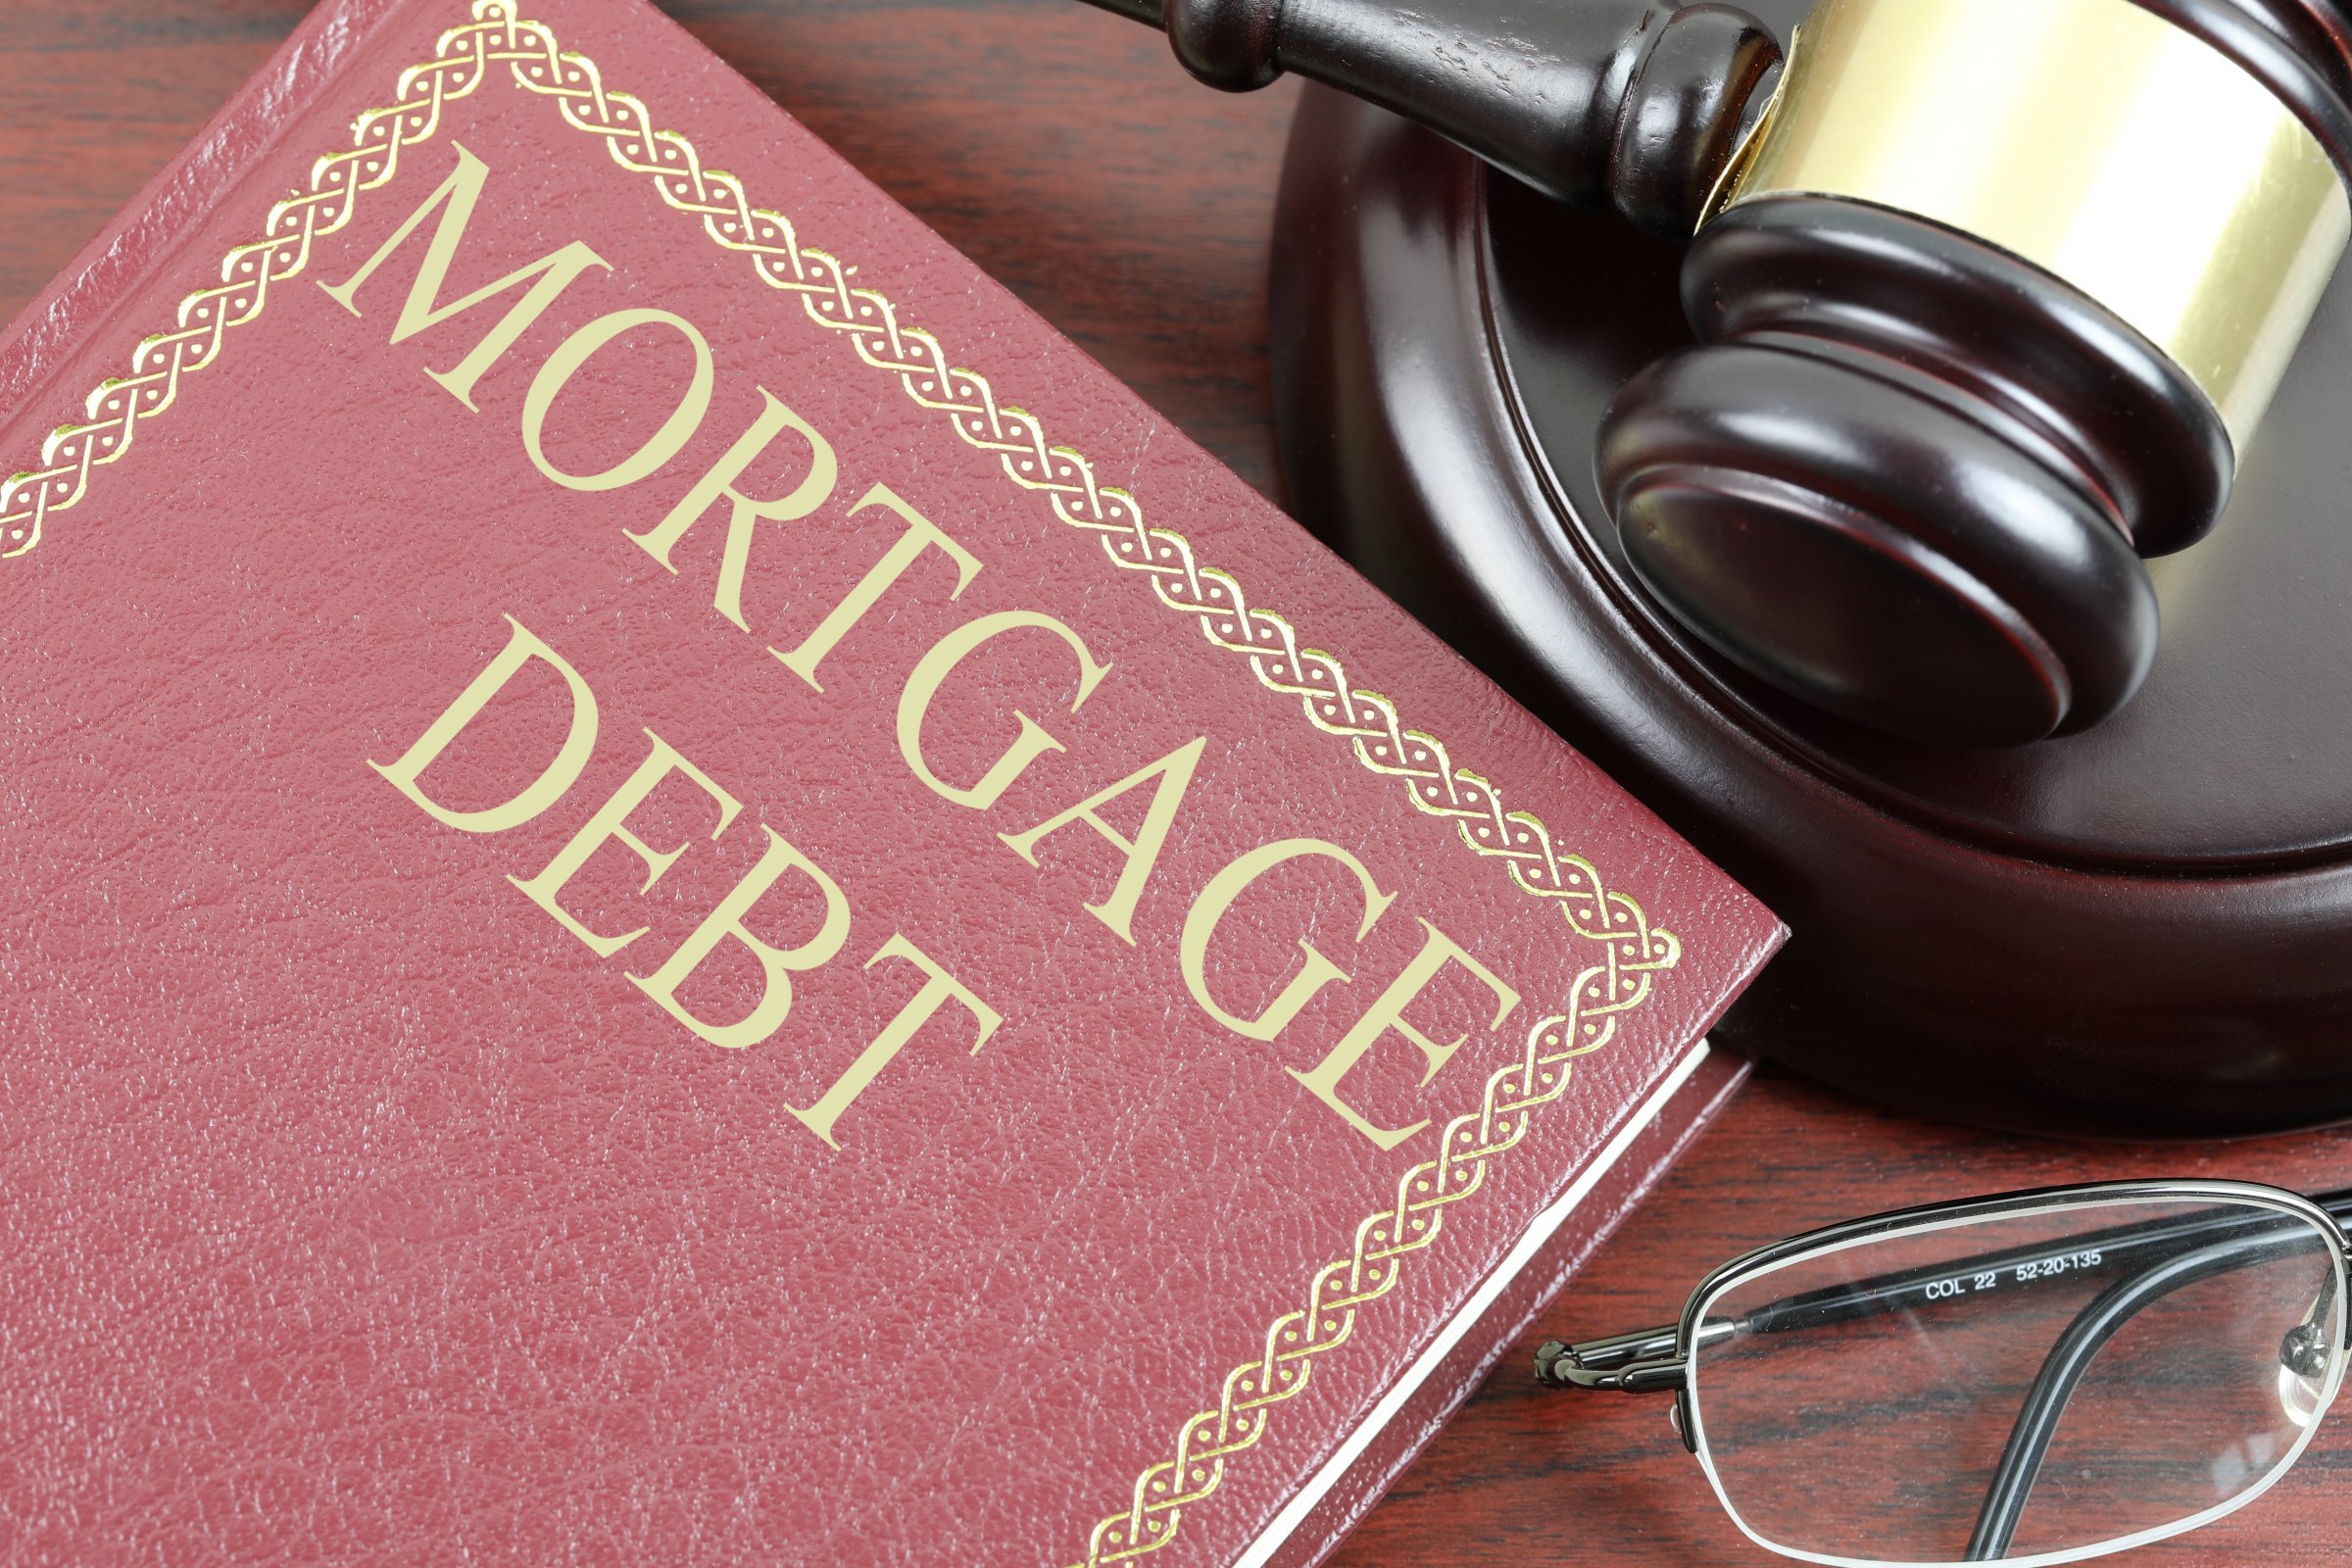 mortgage debt